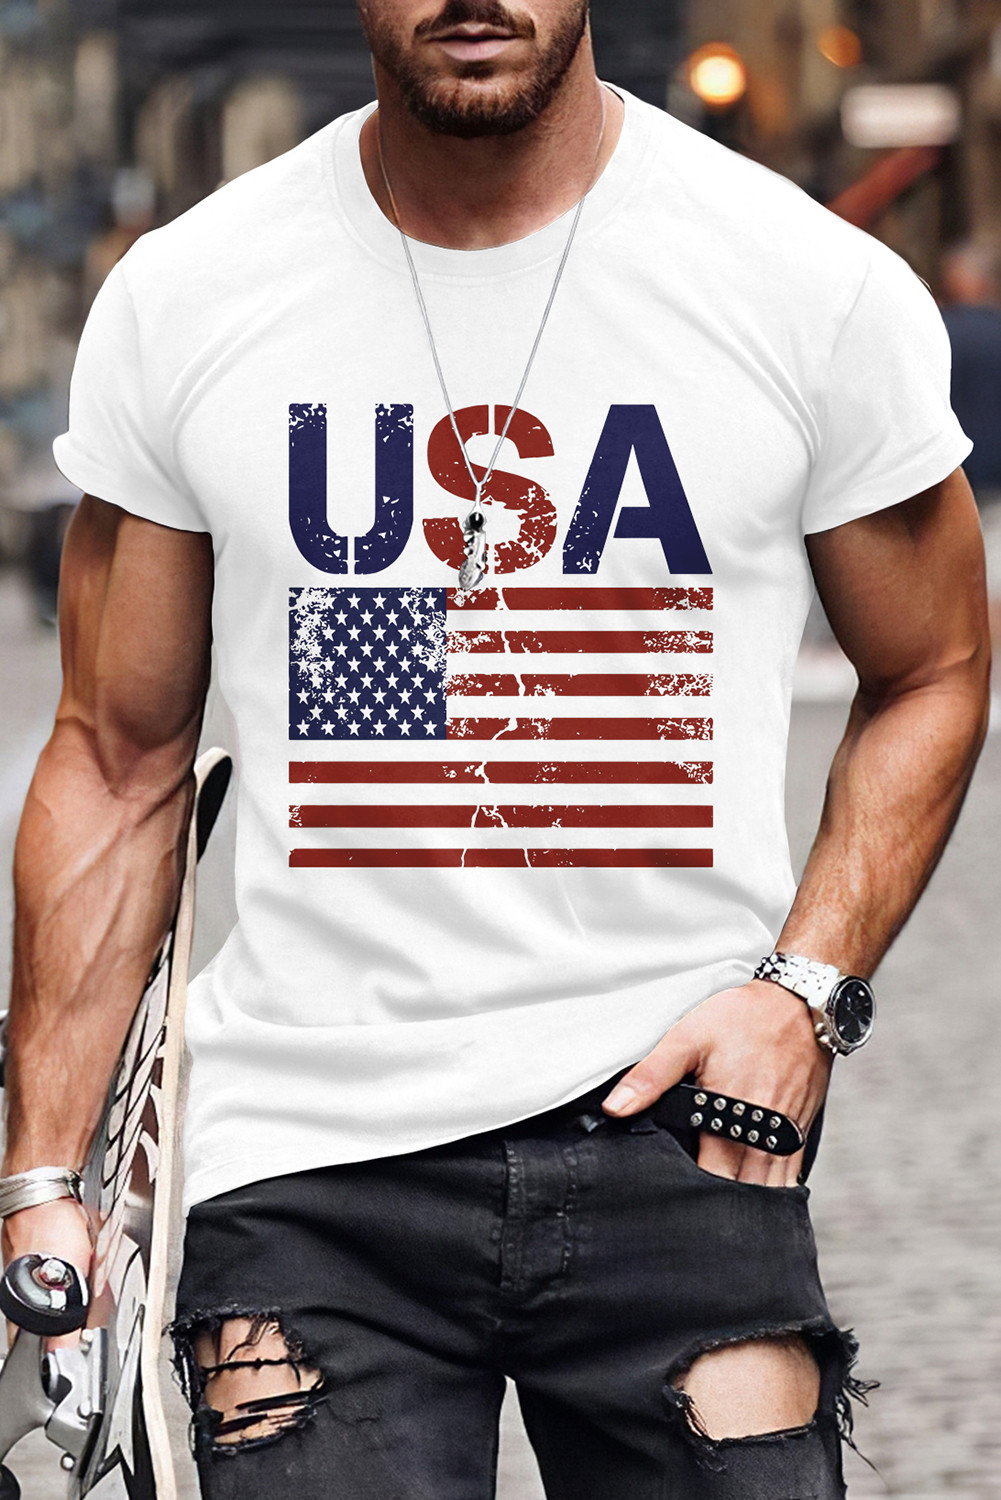 White USA Flag Print O-neck Men's Graphic T-shirt